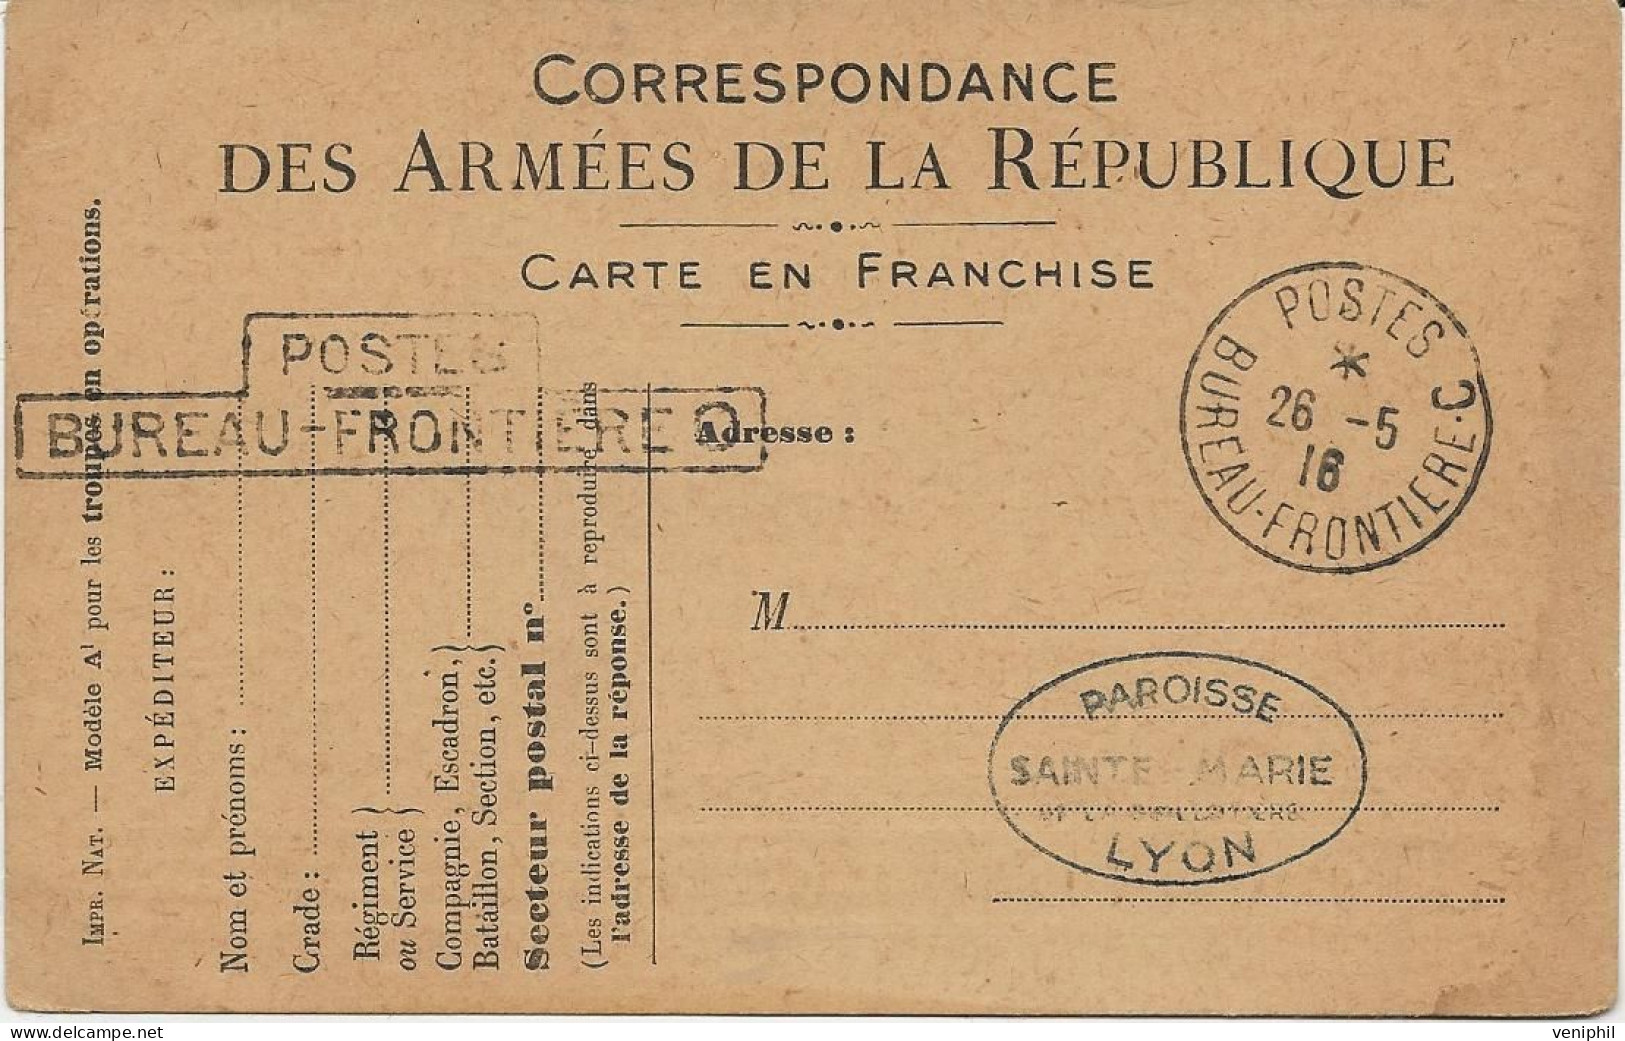 ENTIER POSTAL CARTE DE FRANCHISE CAD BUREAU FRONTIERE C POSTES 28-5-1918 - - Guerre De 1914-18